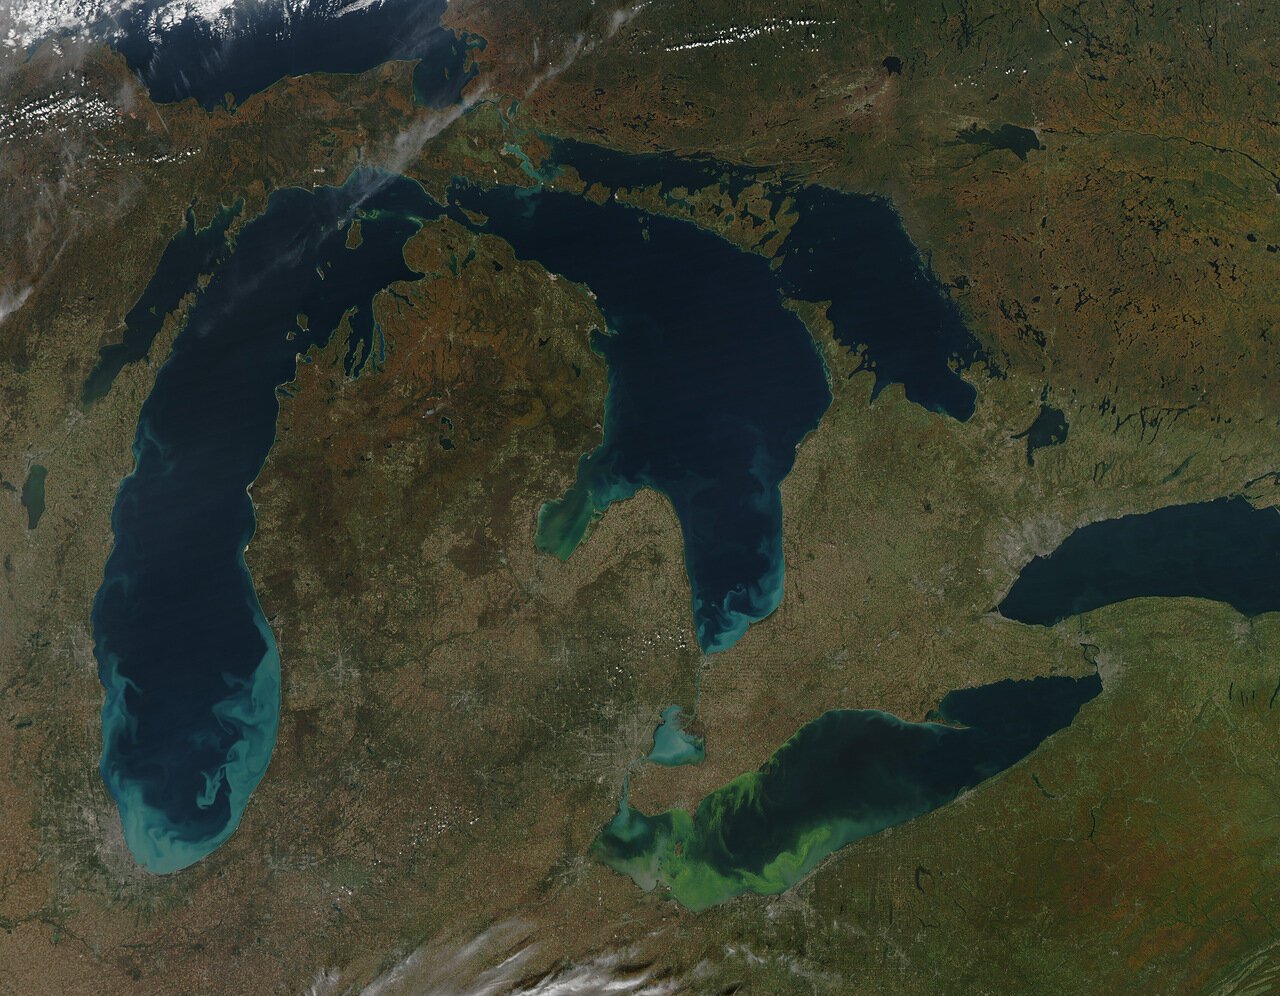 Великие озера Северной Америки Мичиган. Великие американские озёра верхнее Гурон Мичиган Эри Онтарио. Великие озёра озёра Северной Америки. 5 Великих озер Северной Америки. В состав великих американских озер входит